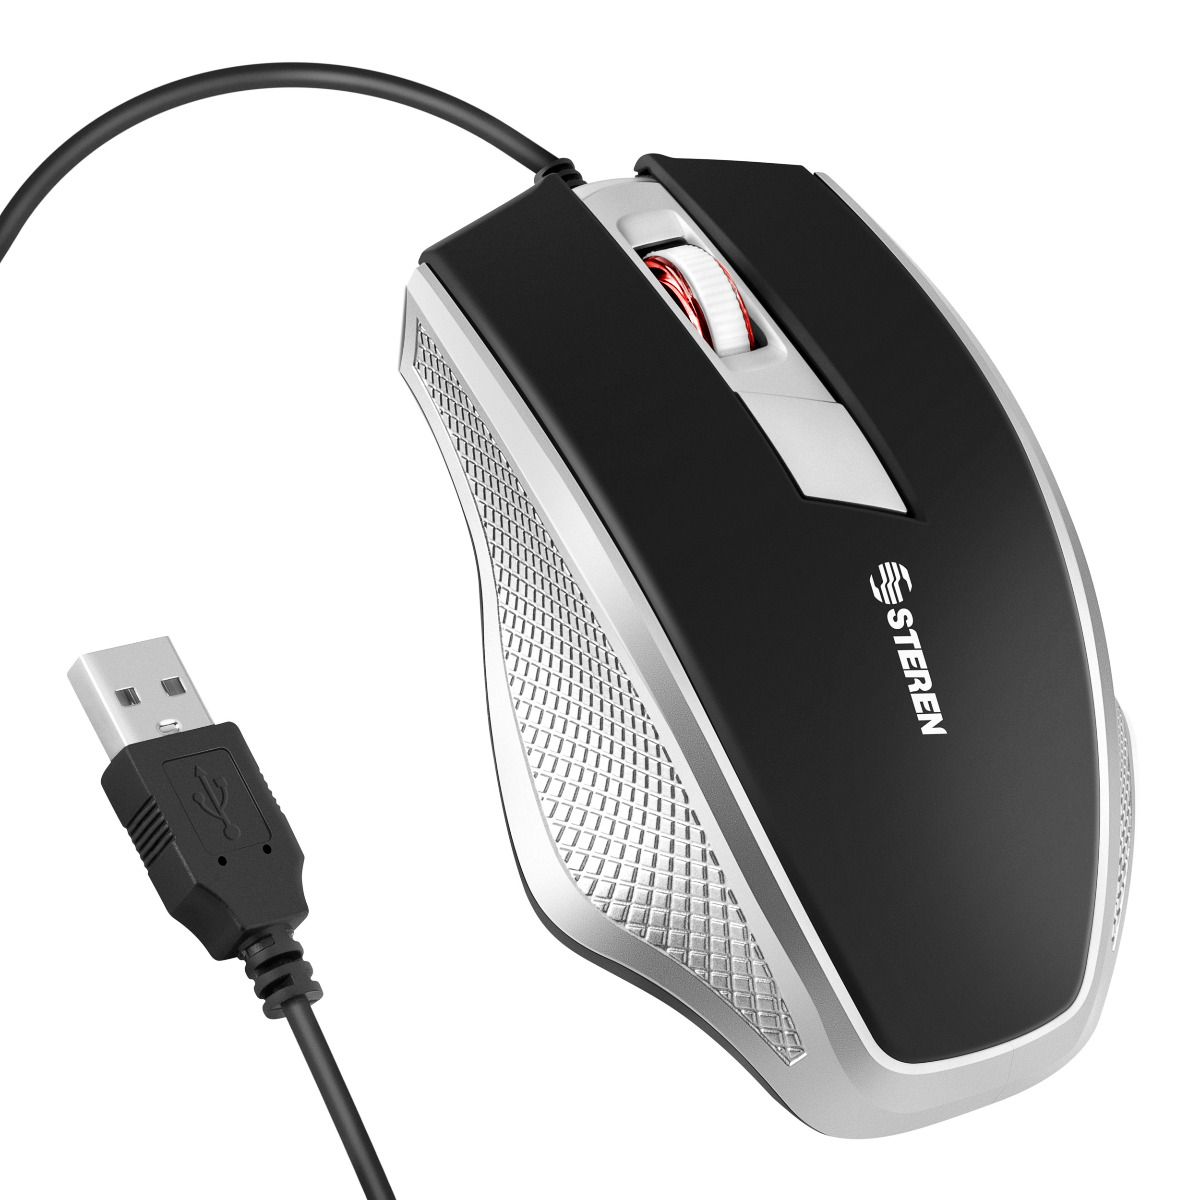 SGIN Ratón con cable USB, ratón óptico para computadora con diseño  ergonómico, portátil, mouse para portátil compatible con PC con Windows,  laptop